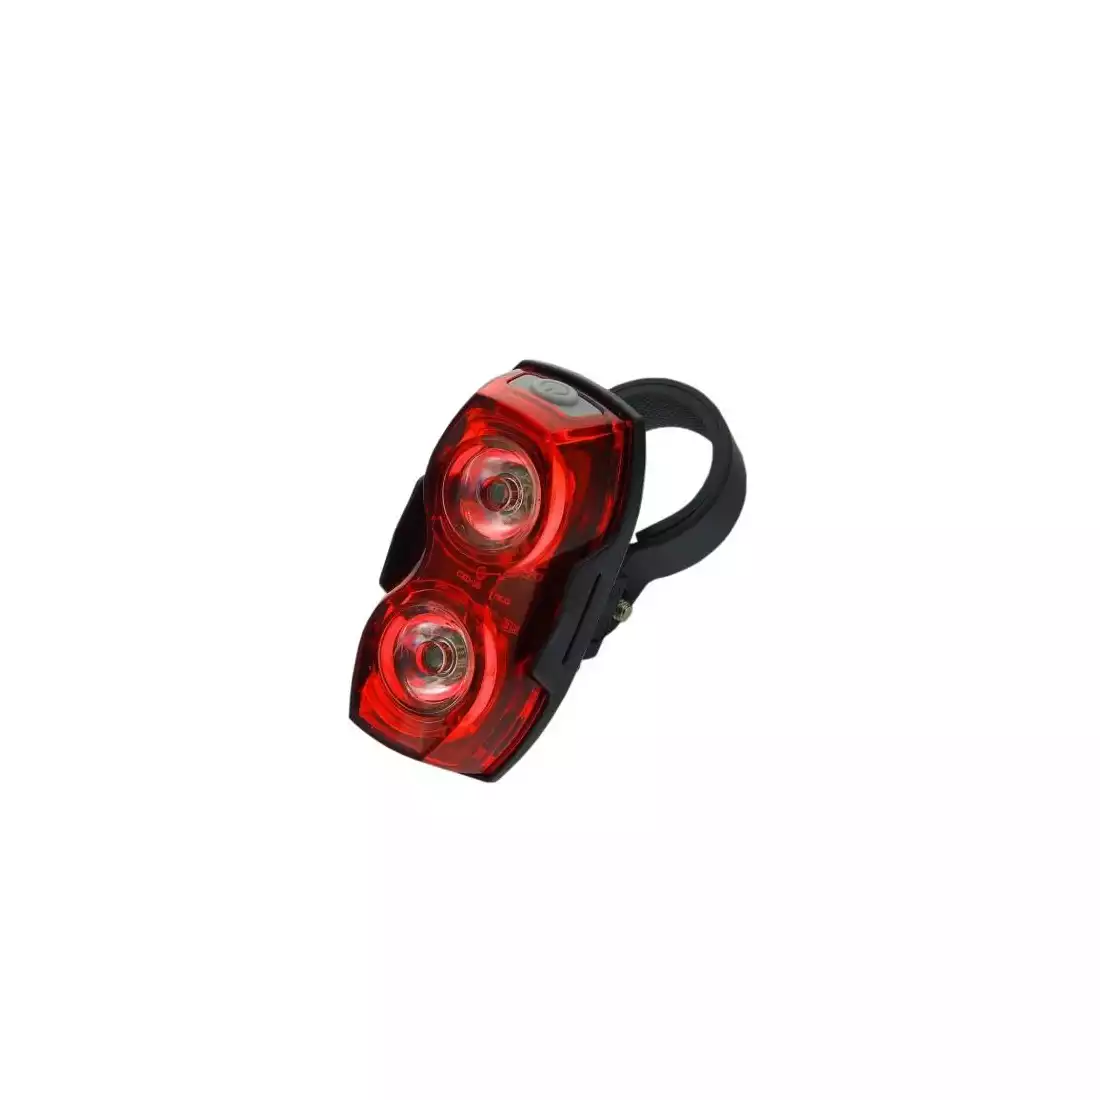 EVERACTIVE TL-X2 lampă spate pentru bicicletă, negru, diodă - roșu